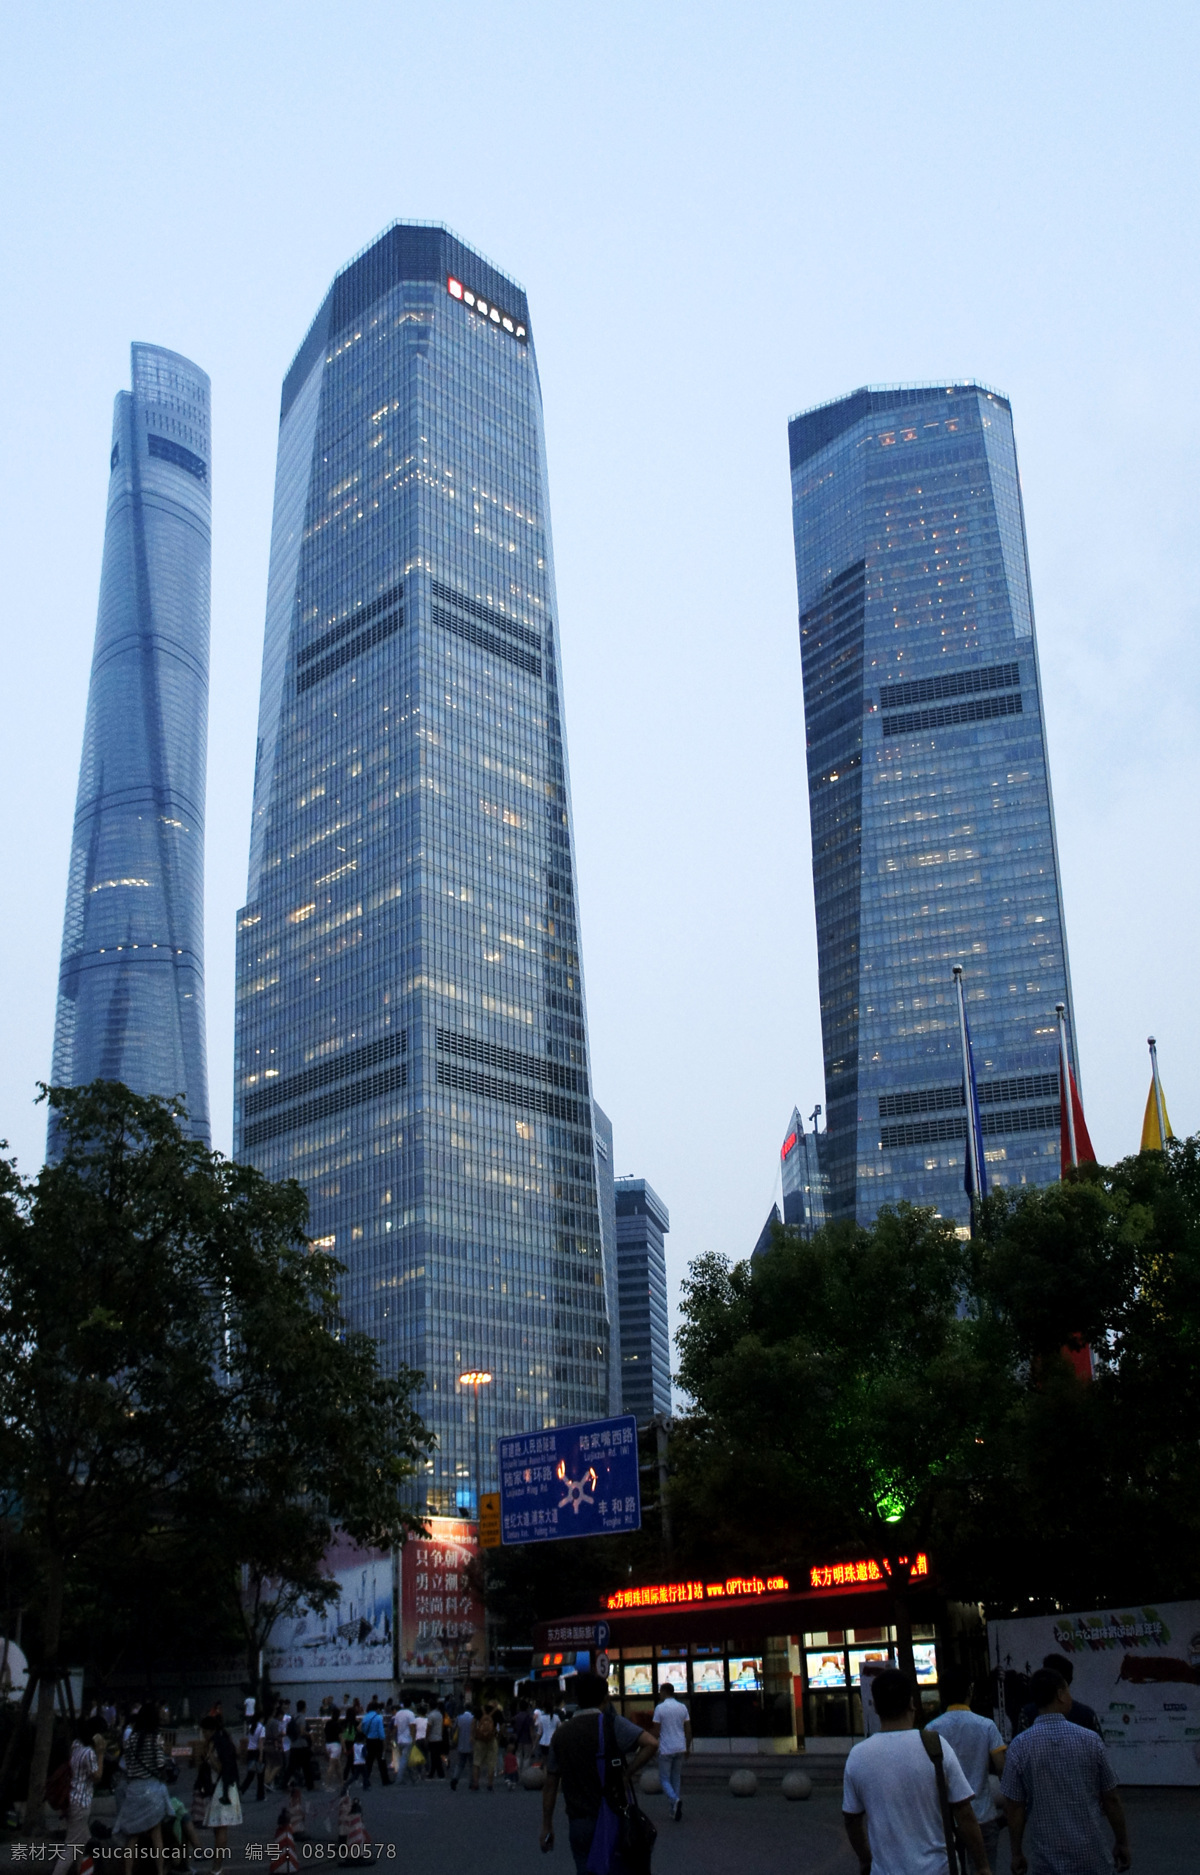 上海 城市建设 上海中心 金融中心 上海中心大厦 摩天大厦 最高建筑 城市建筑 蓝色 玻璃建筑 钢化玻璃幕墙 幕墙 上海地标建筑 旅游摄影 国内旅游 自然景观 建筑景观